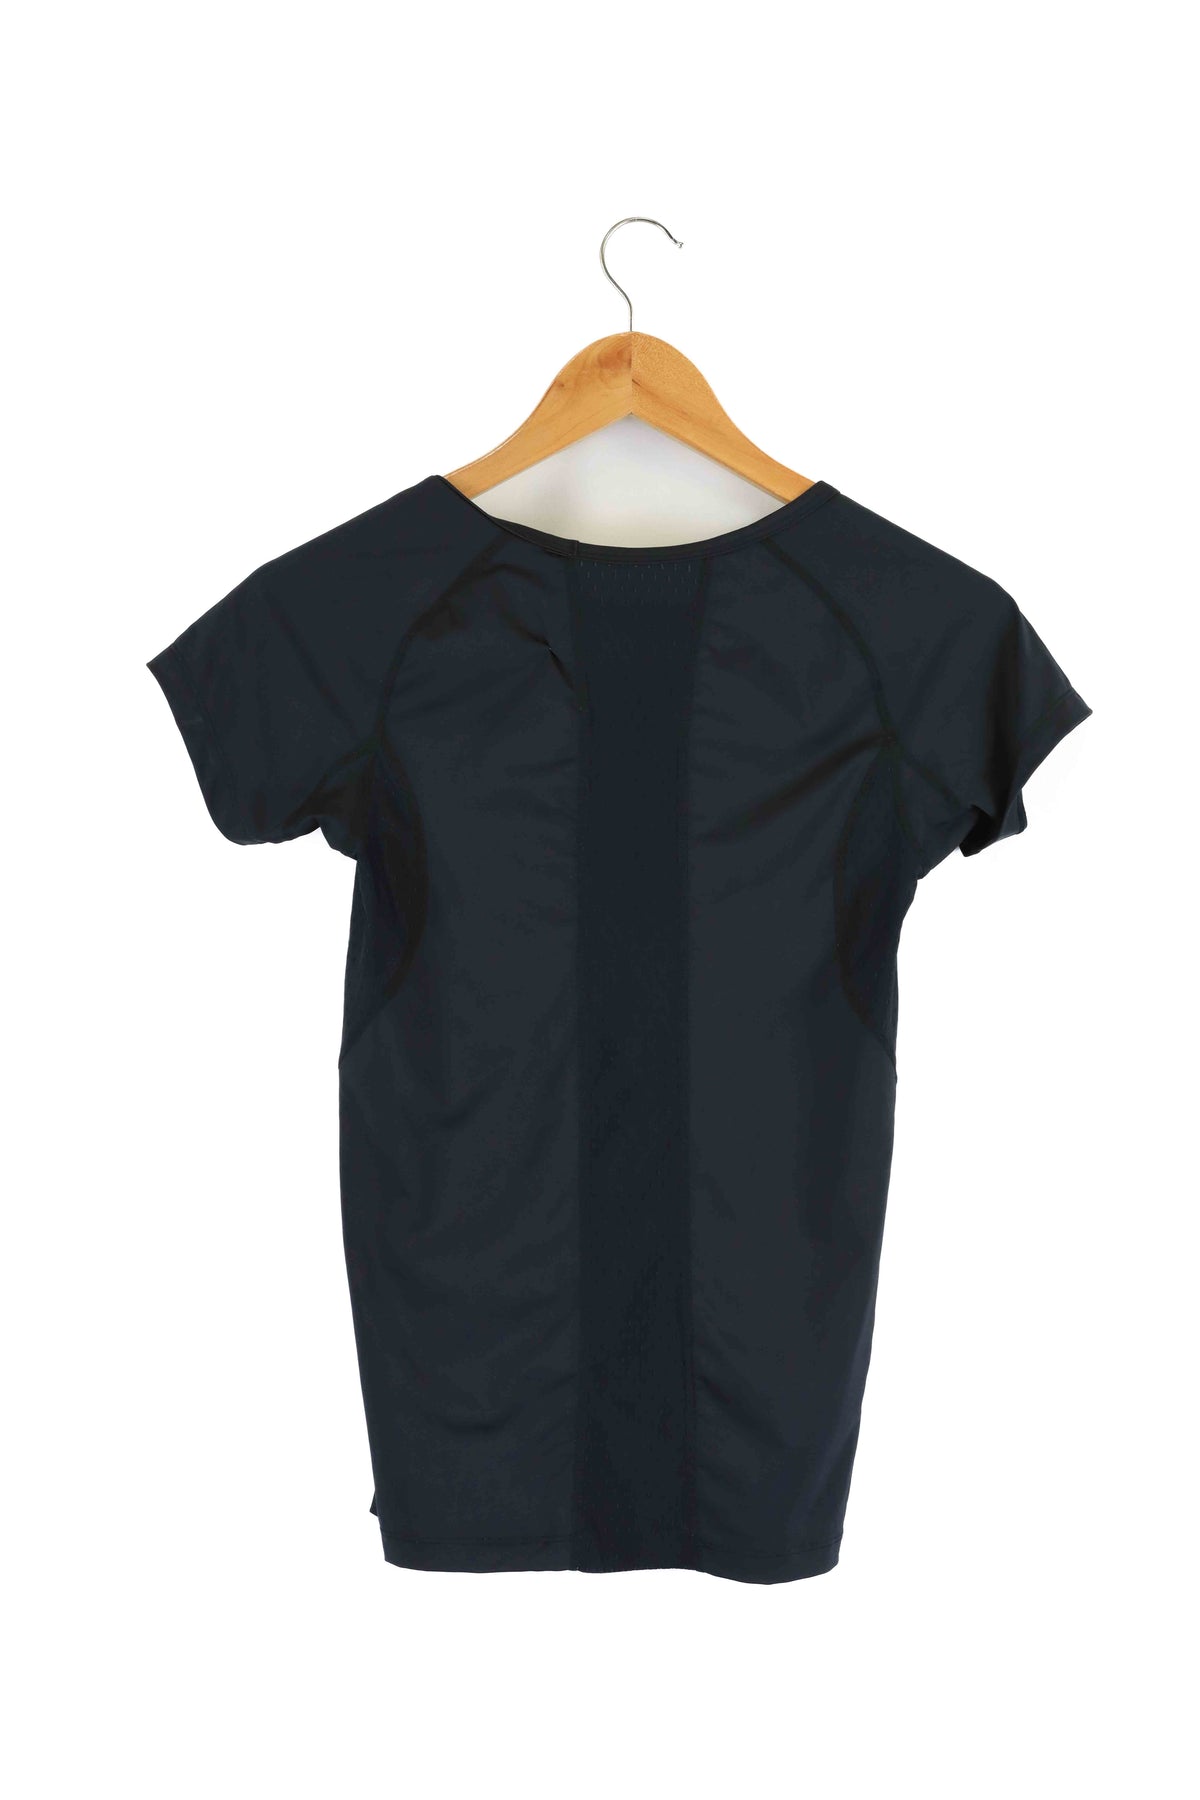 2XU Black T-shirt M